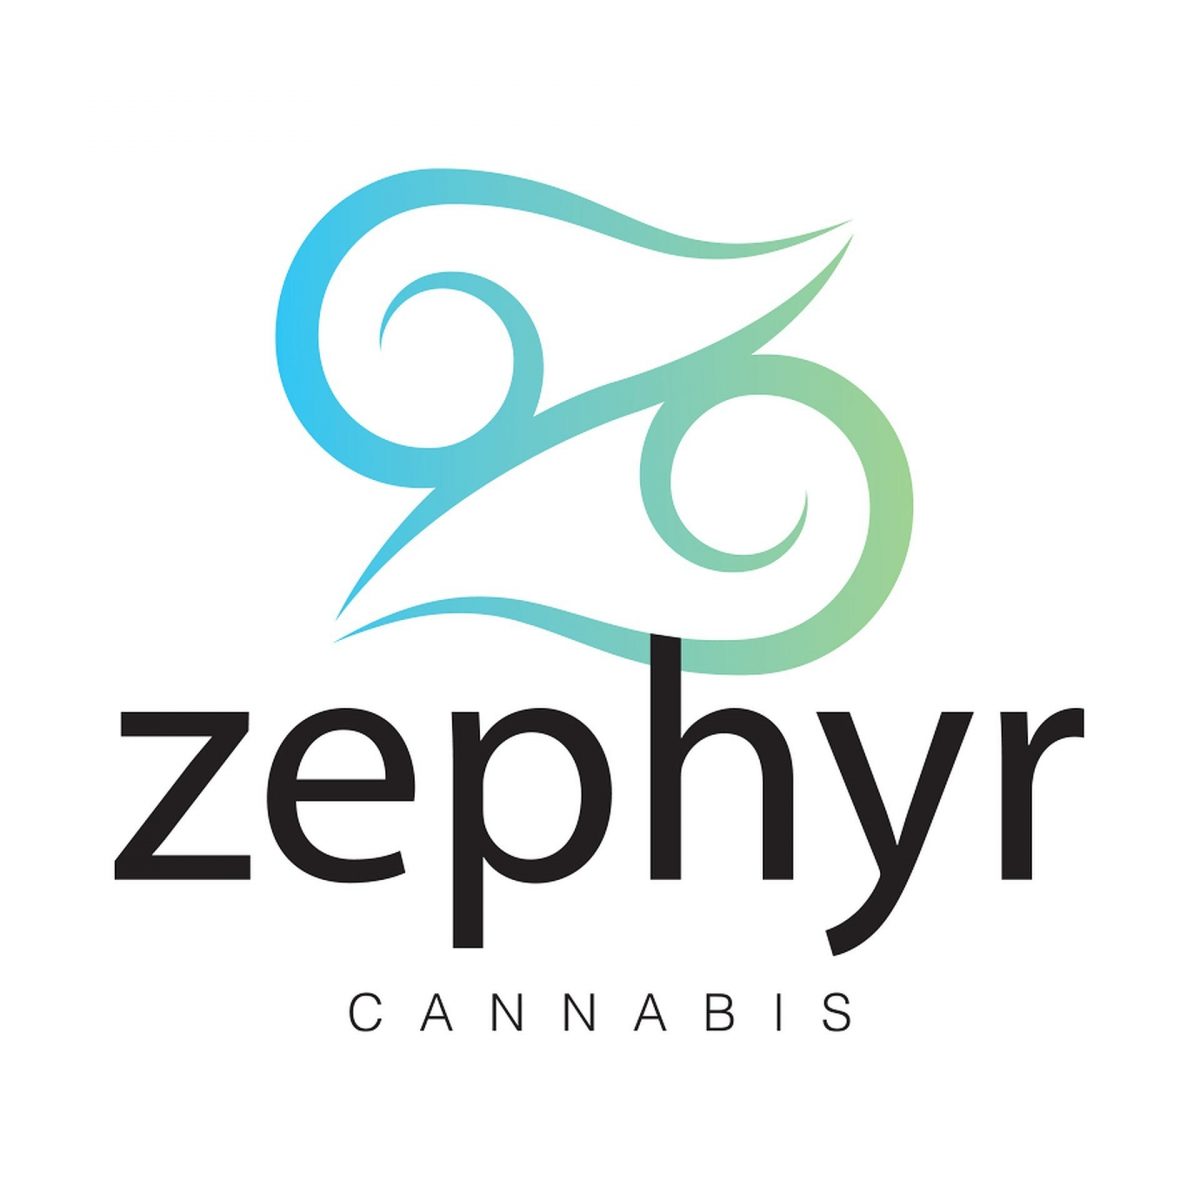 zephyr-cannabis